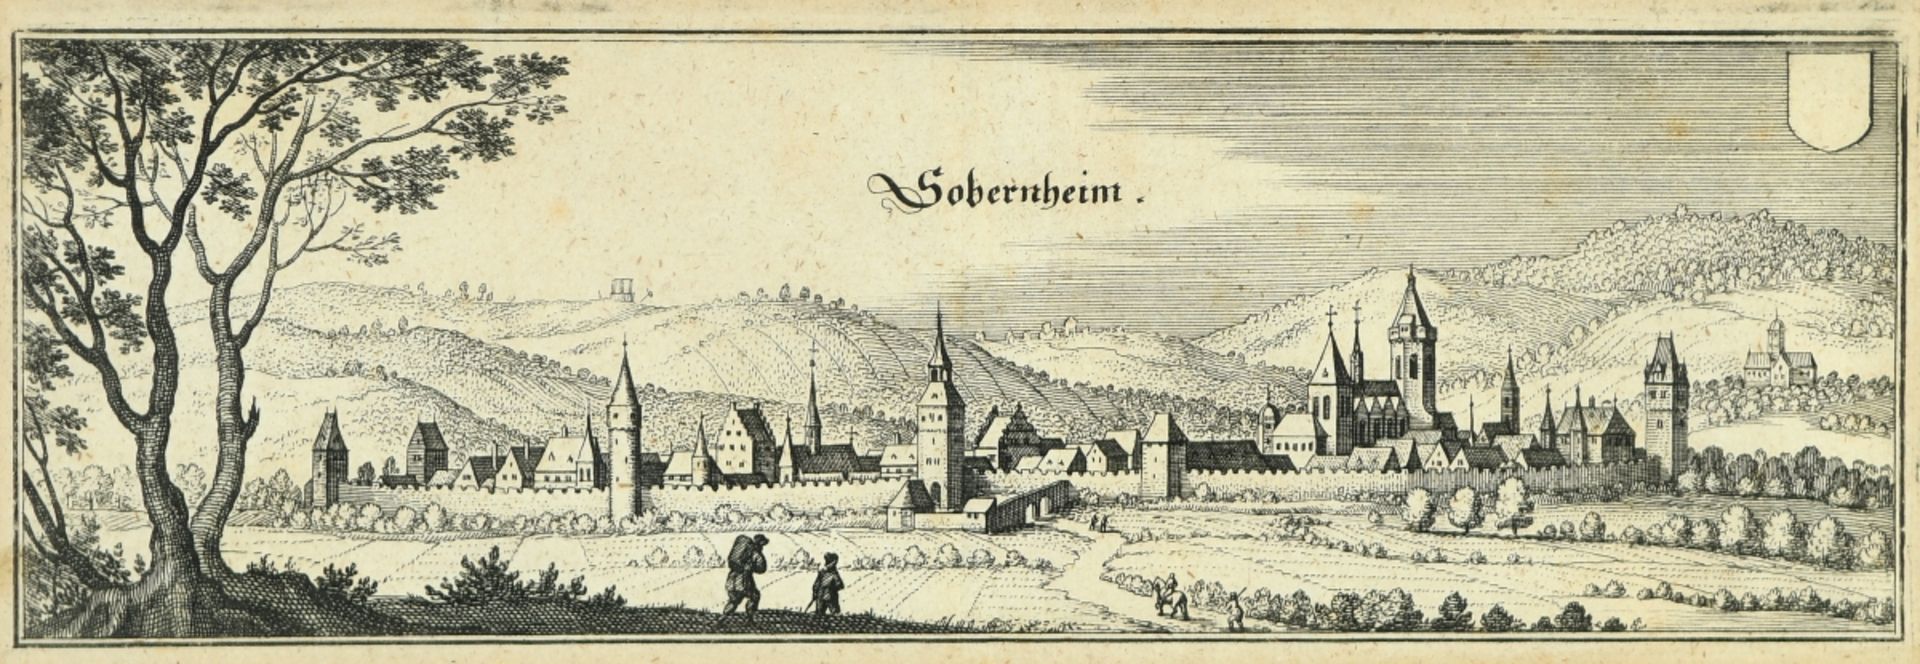 Sobernheim, Gesamtansicht - Bild 2 aus 2